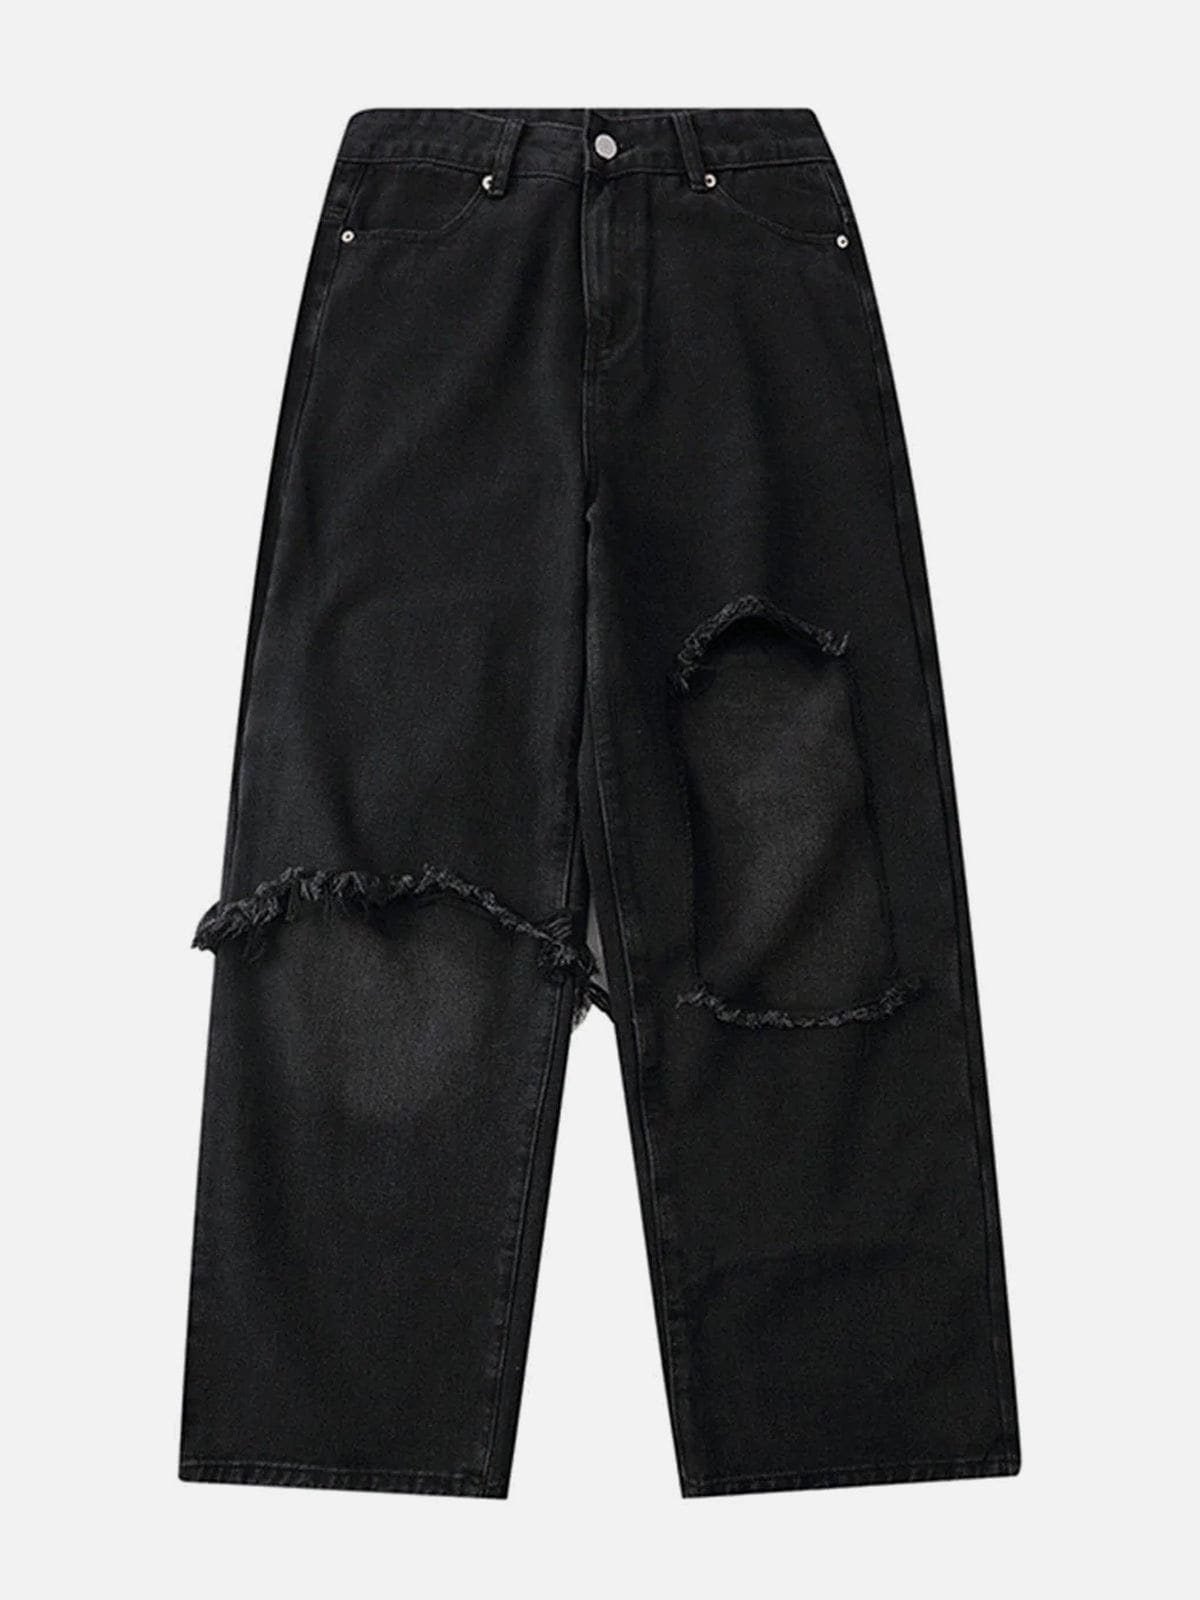 Eprezzy® - Ripped Stitched Jeans Streetwear Fashion - eprezzy.com